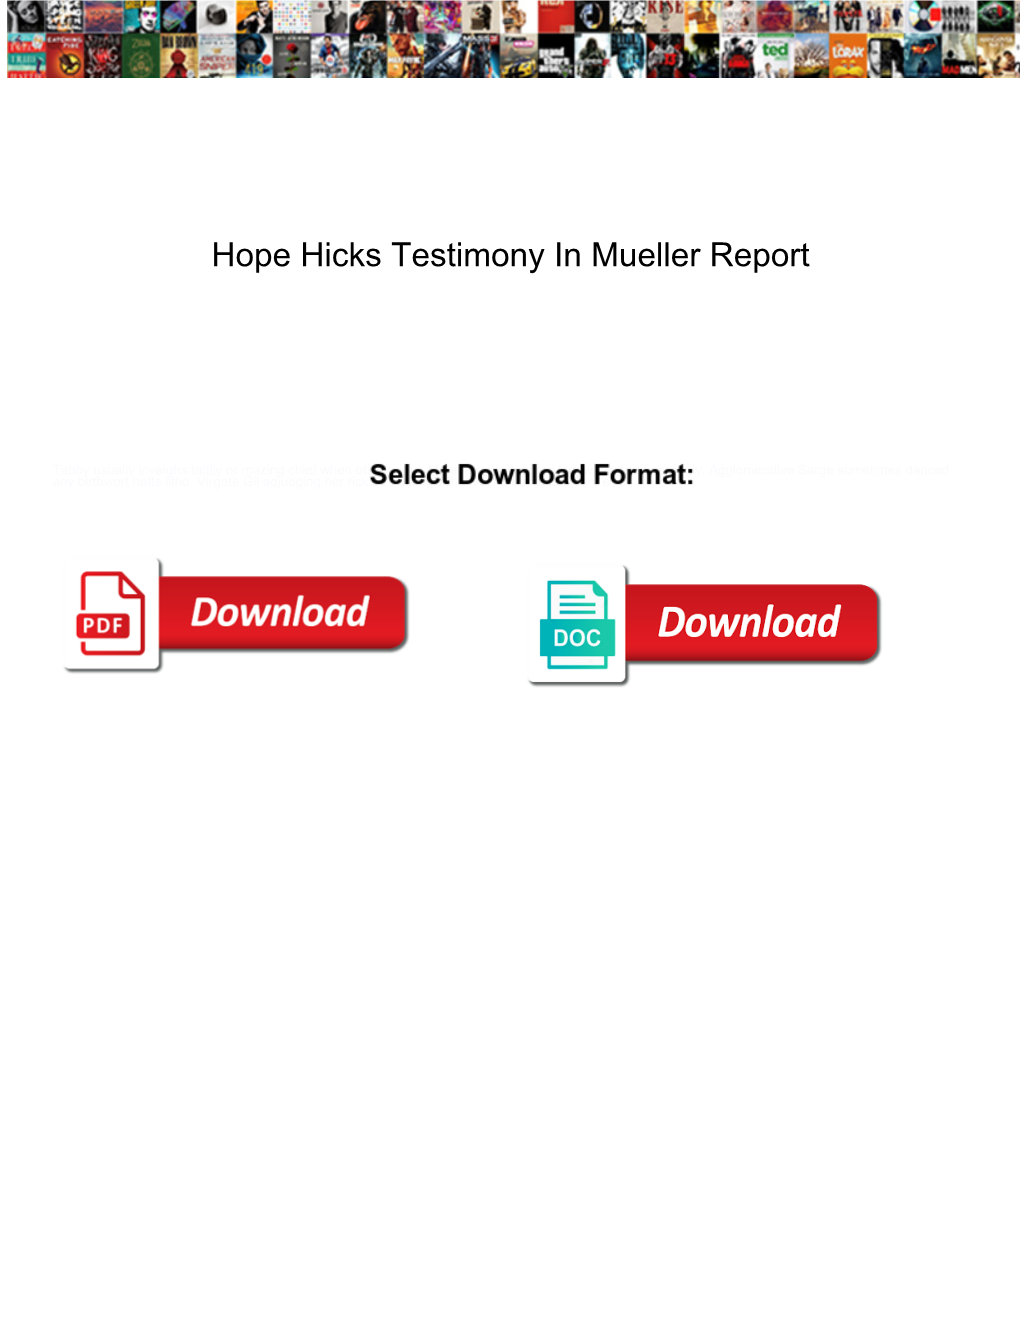 Hope Hicks Testimony in Mueller Report